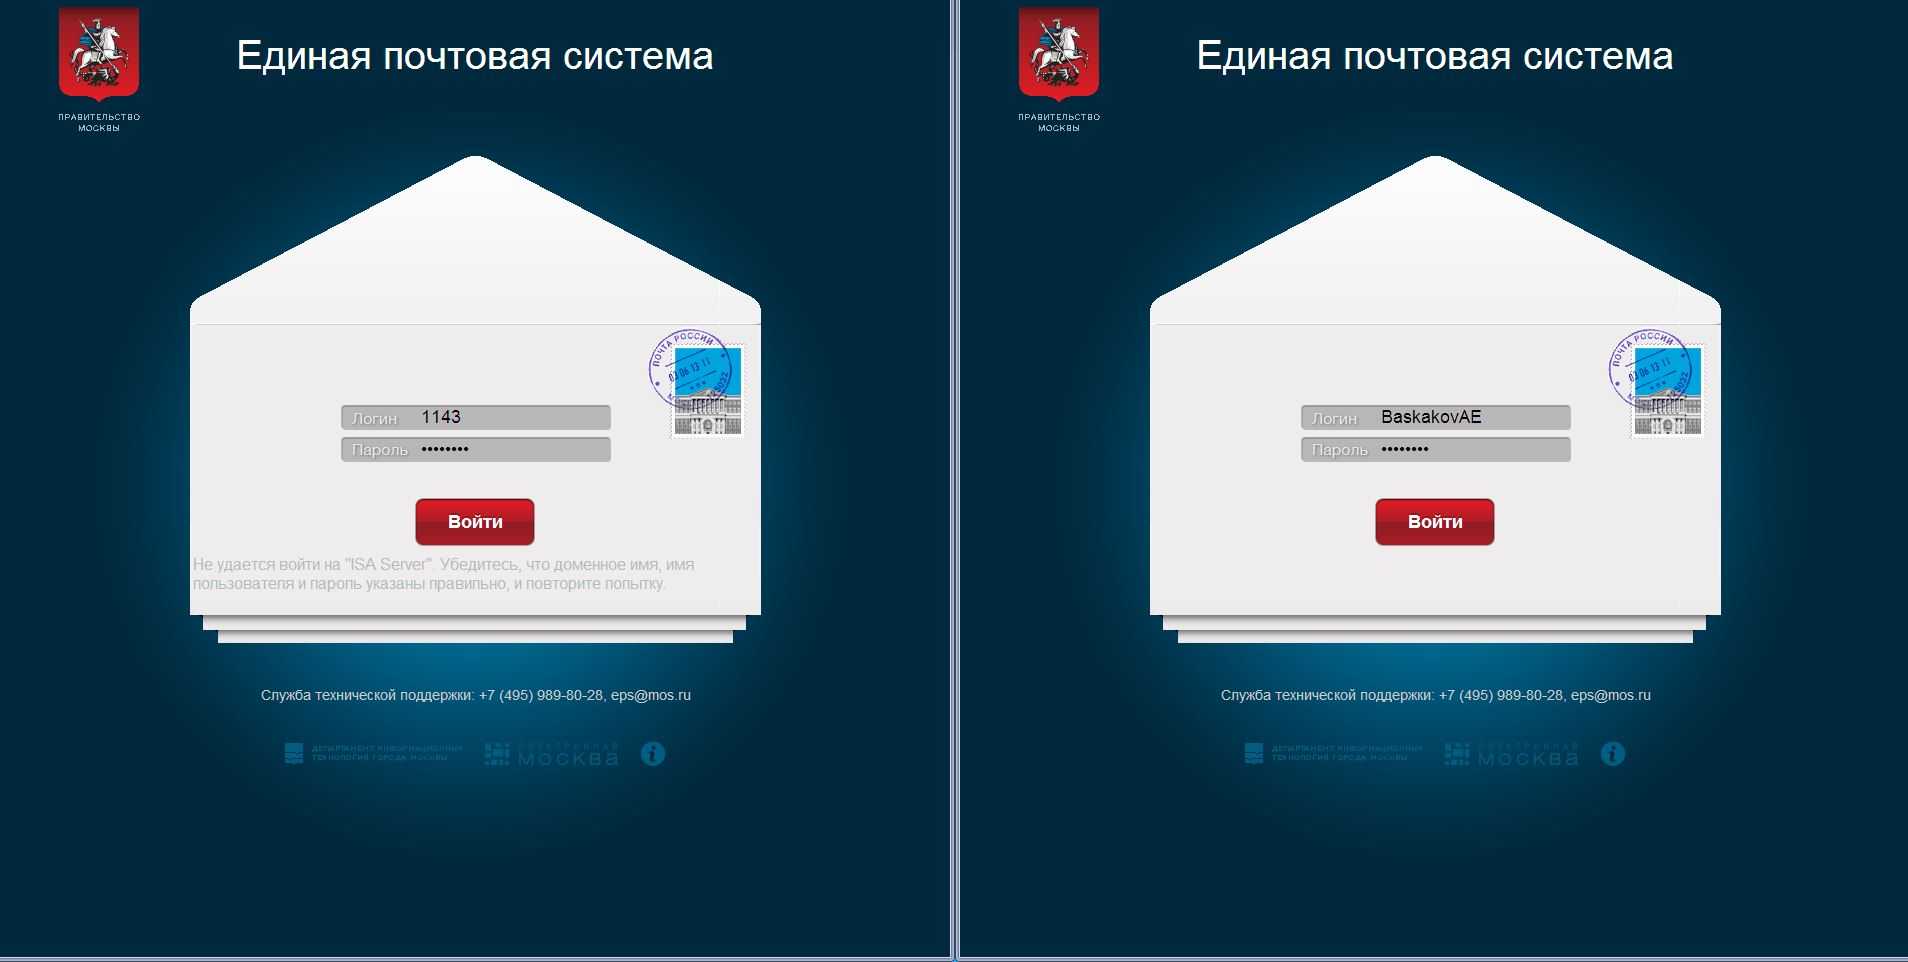 Вход на сайт вконтакте, одноклассники, mail.ru, мой мир, твиттер, знакомства — стартовая страница вход.ру — визуальные закладки для всех сайтов, которыми ты часто пользуешься — добро пожаловать!